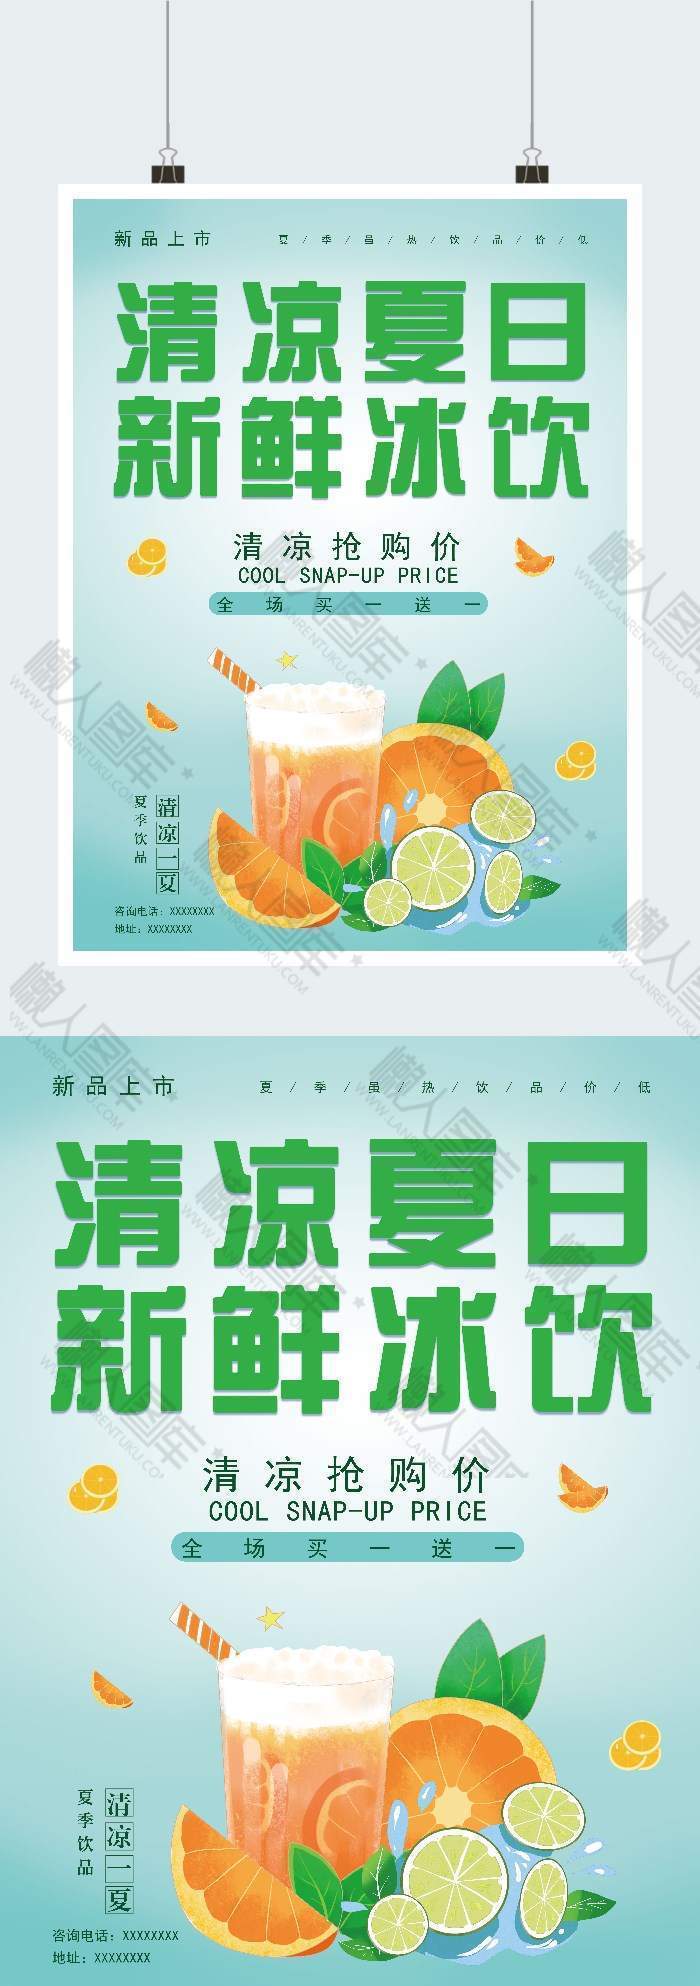 夏季冰爽饮品广告宣传图素材